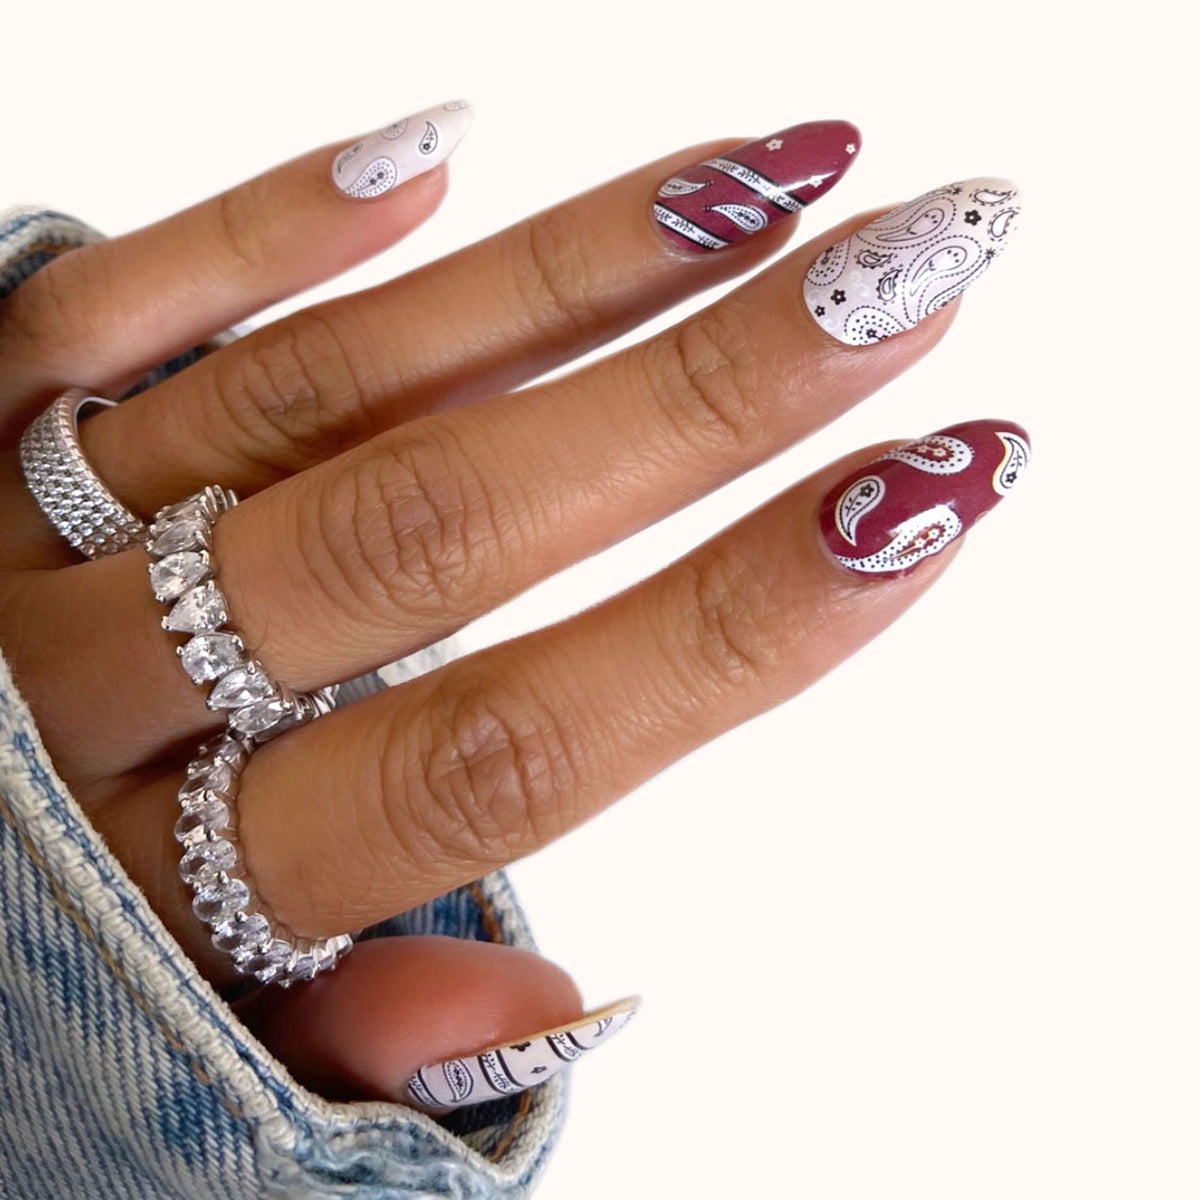 LV nails  Nails design with rhinestones, Acrylic nails, Bandana nails